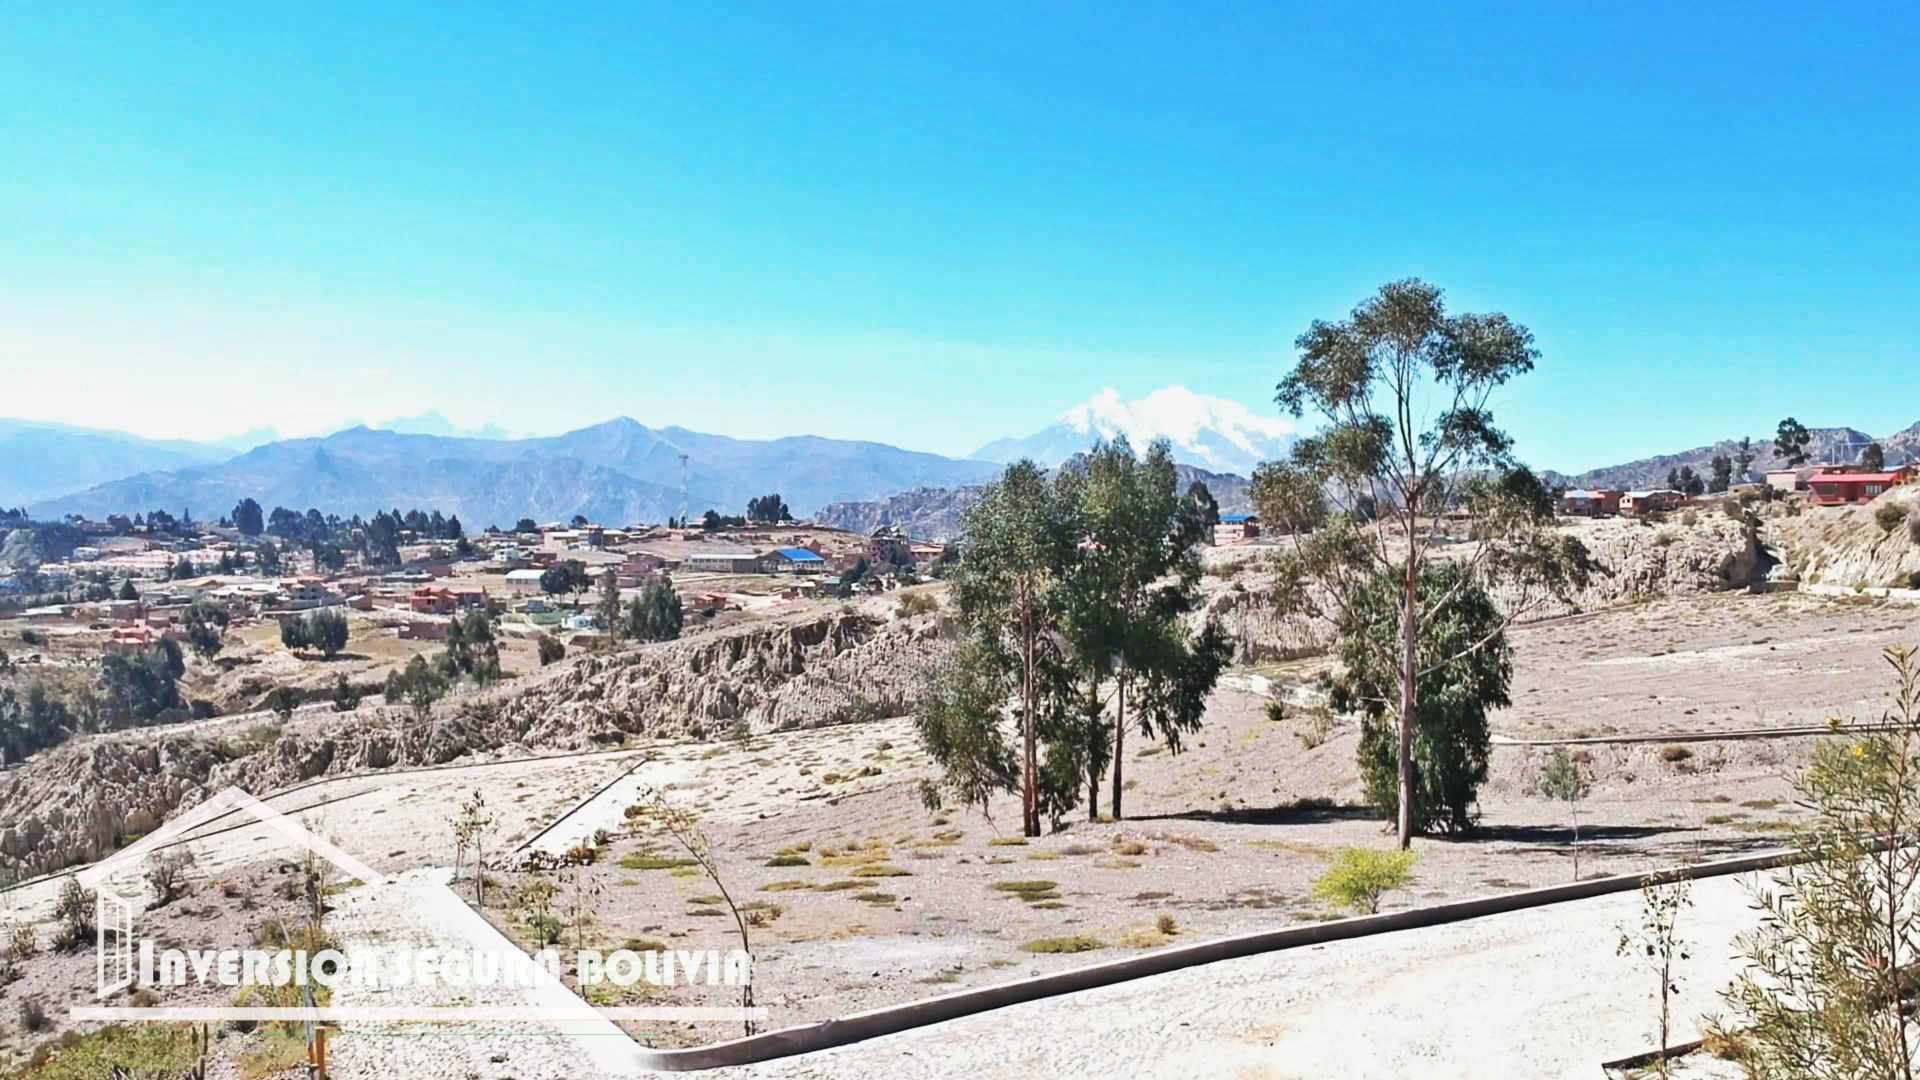 Terreno en Achocalla en La Paz    Foto 5